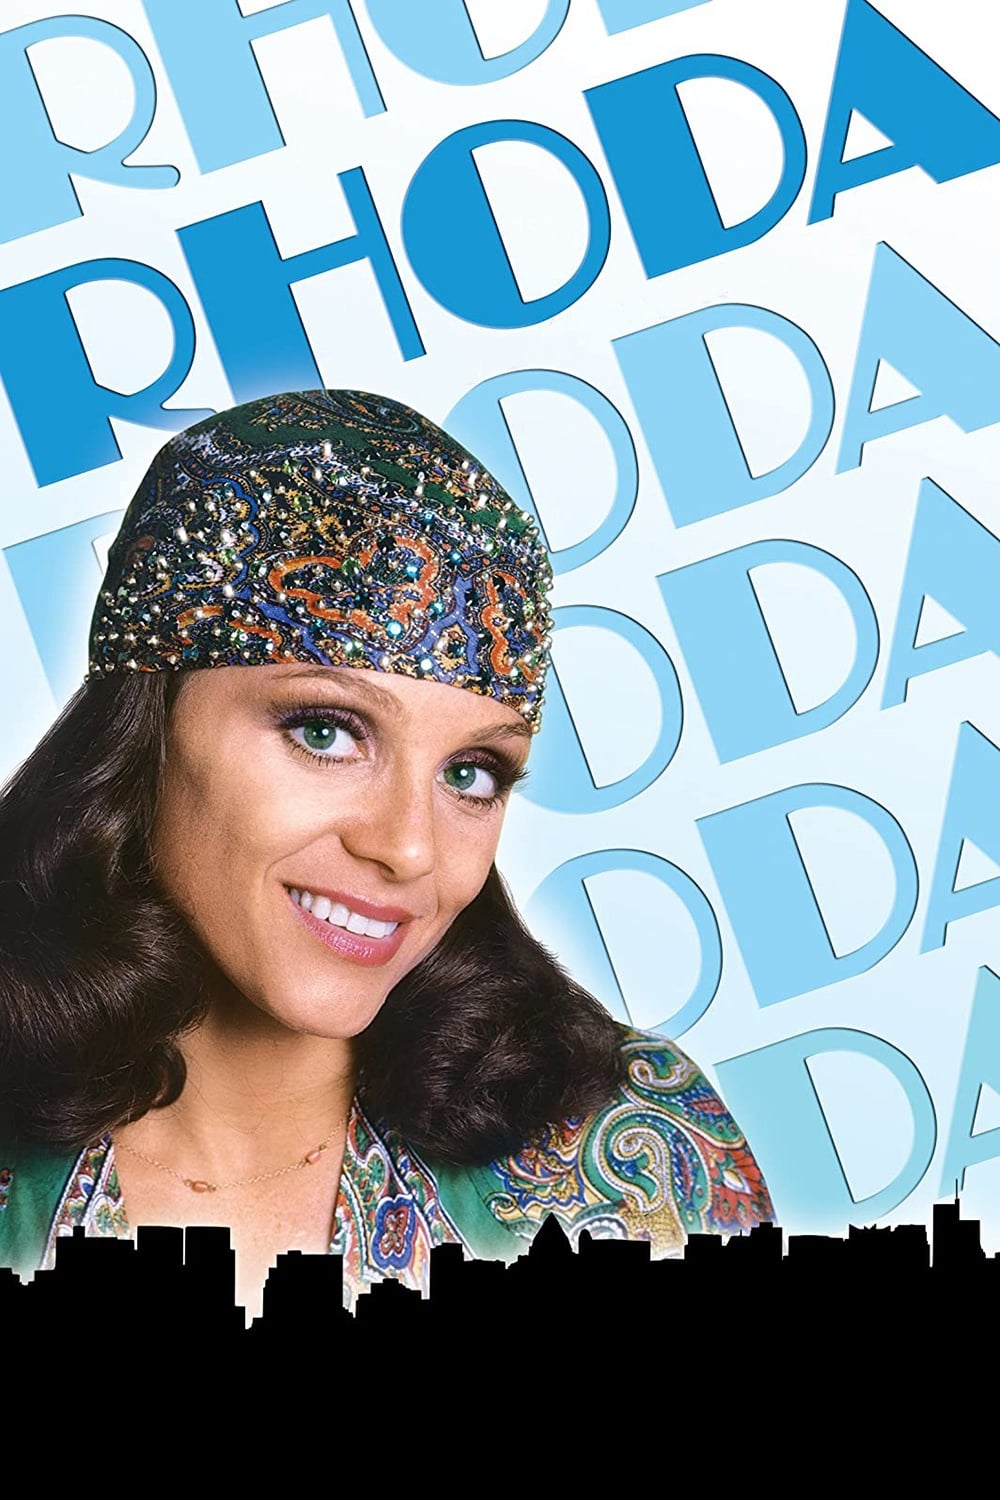 Rhoda (1974)